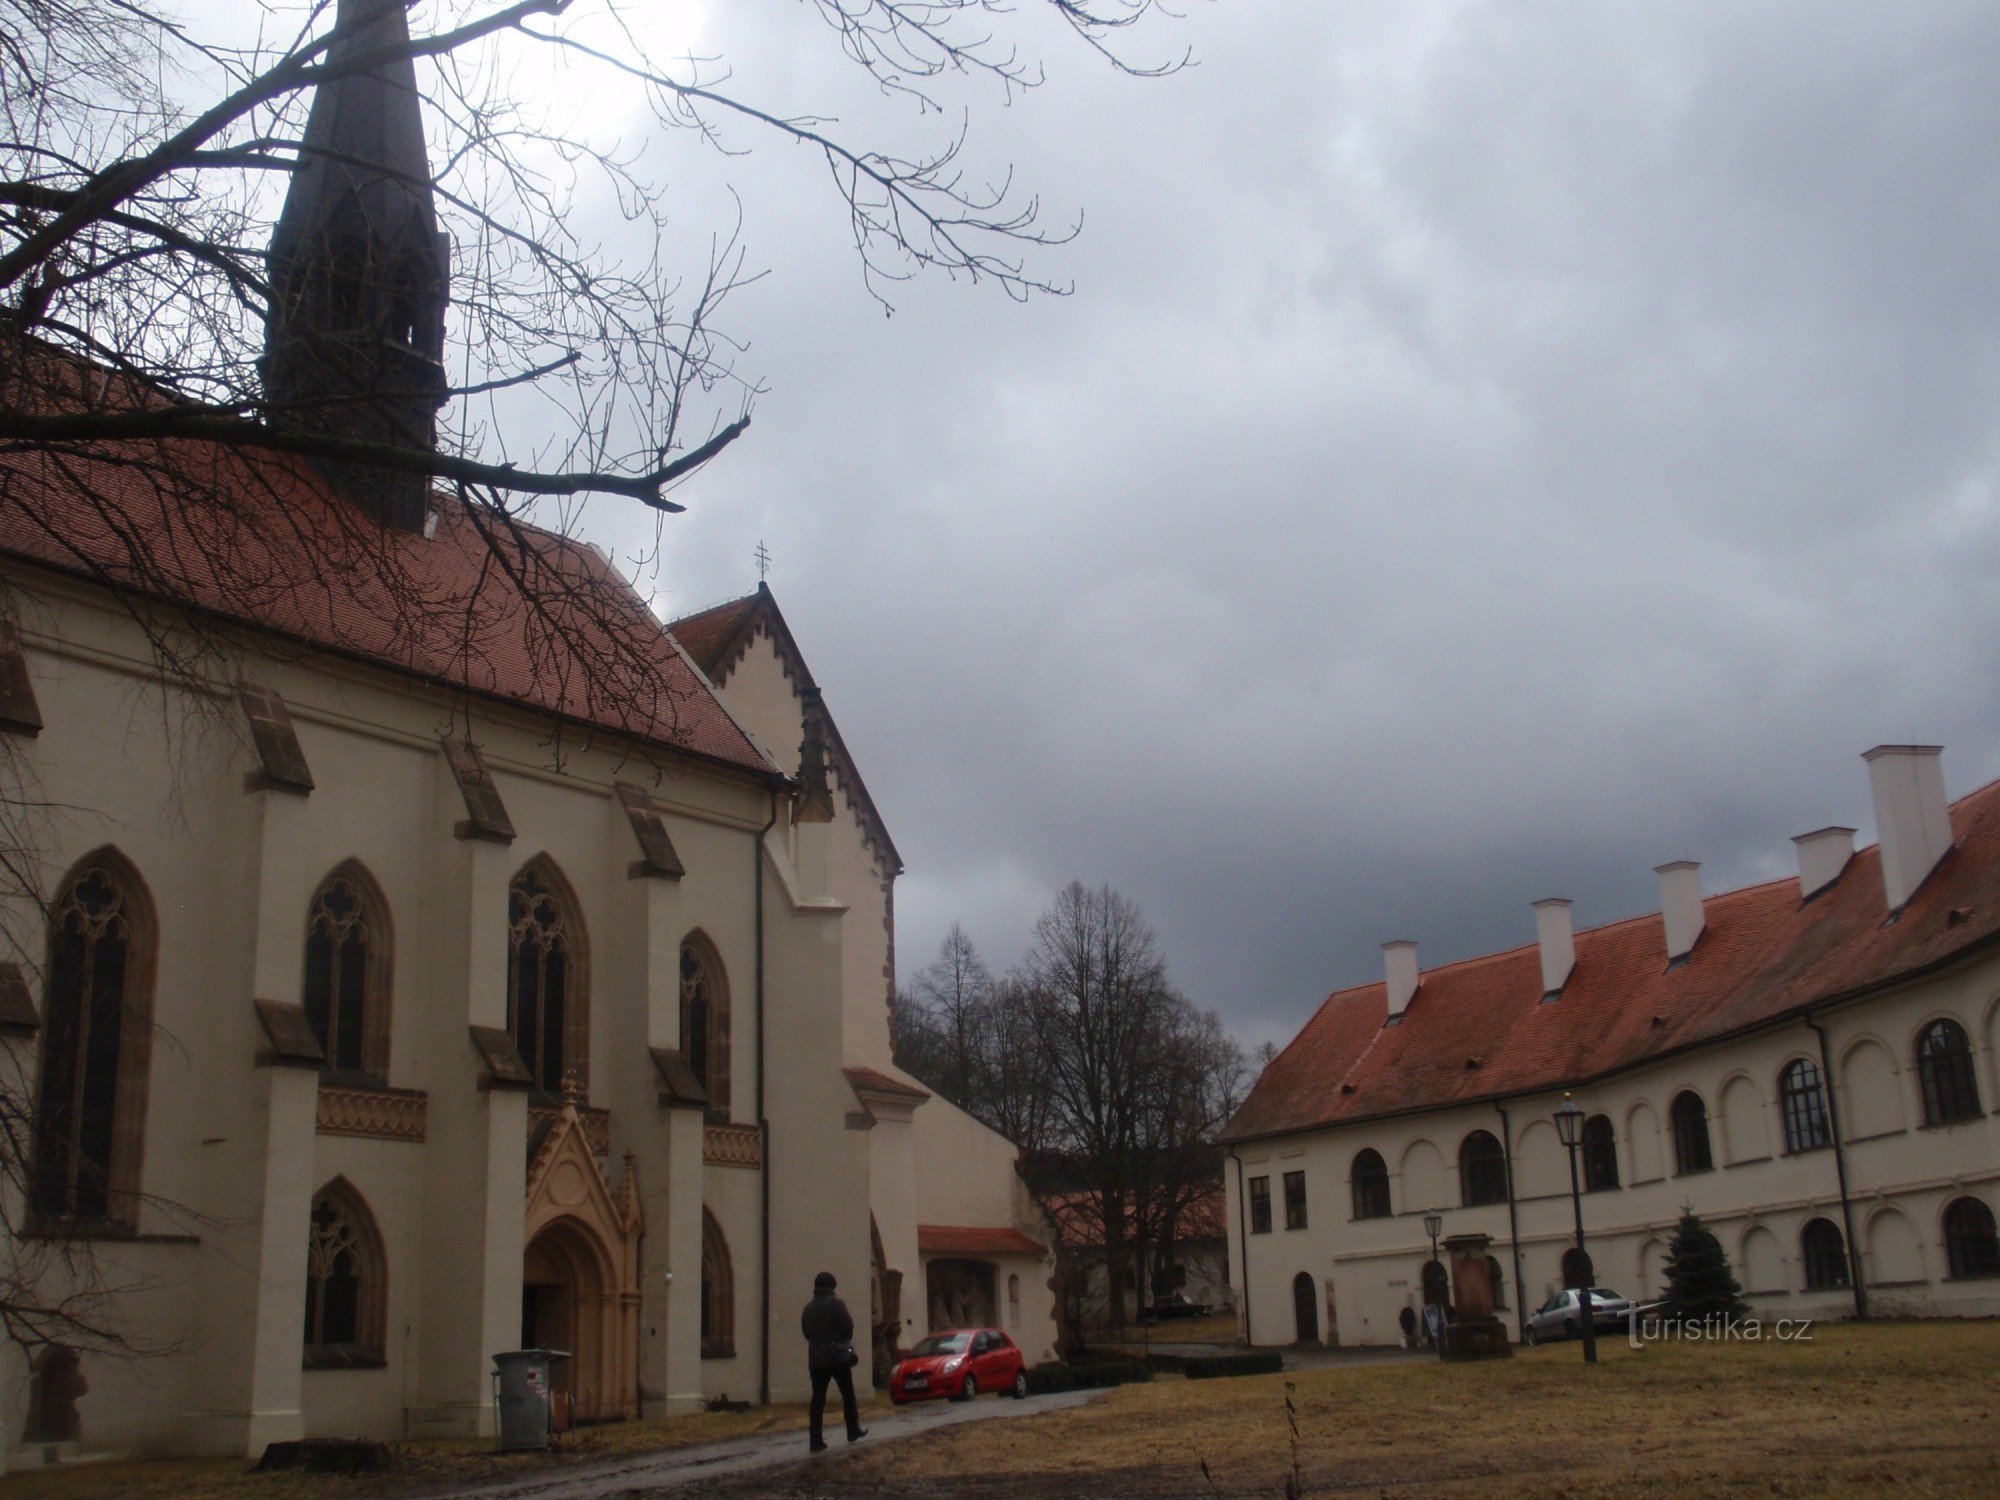 Podhoráck Museum in Předklášteří near Tišnov